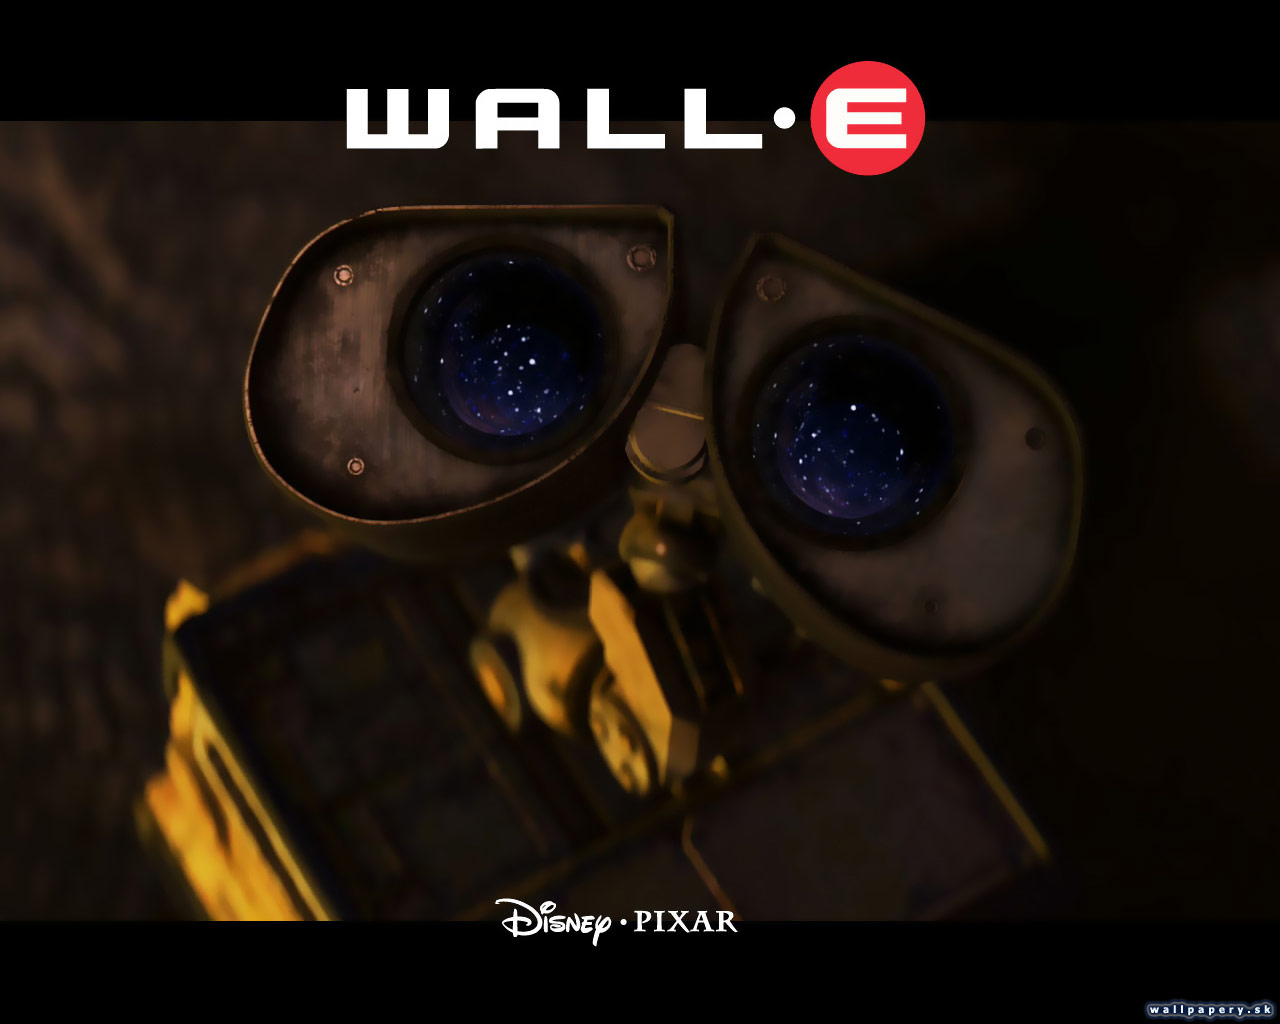 WALLE - wallpaper 16